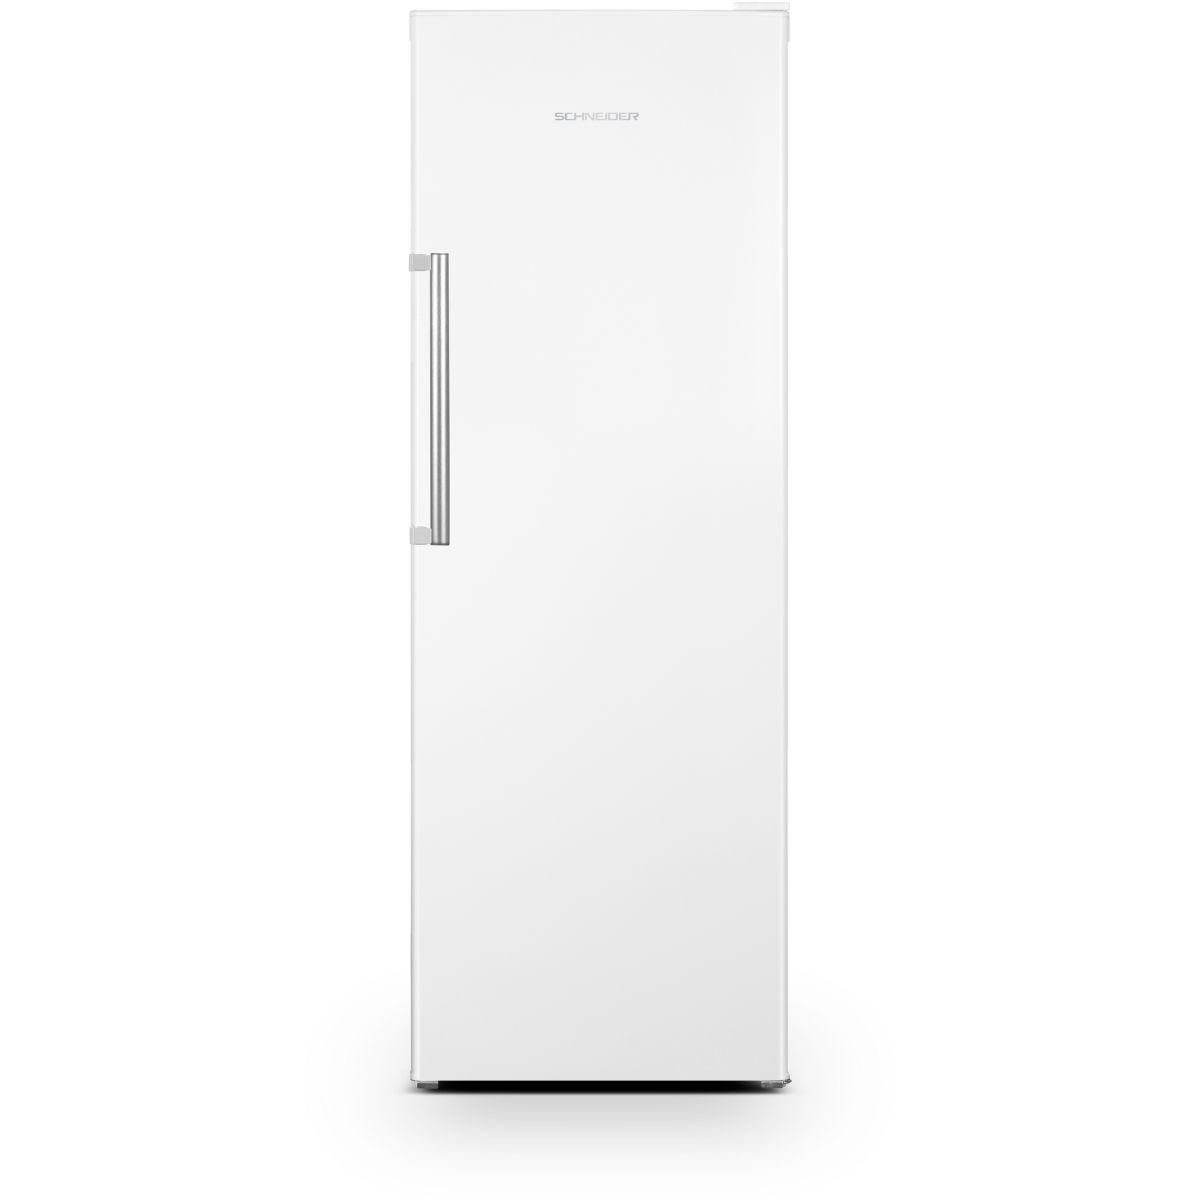 SCHNEIDER Réfrigérateur 1 porte SCODF335W